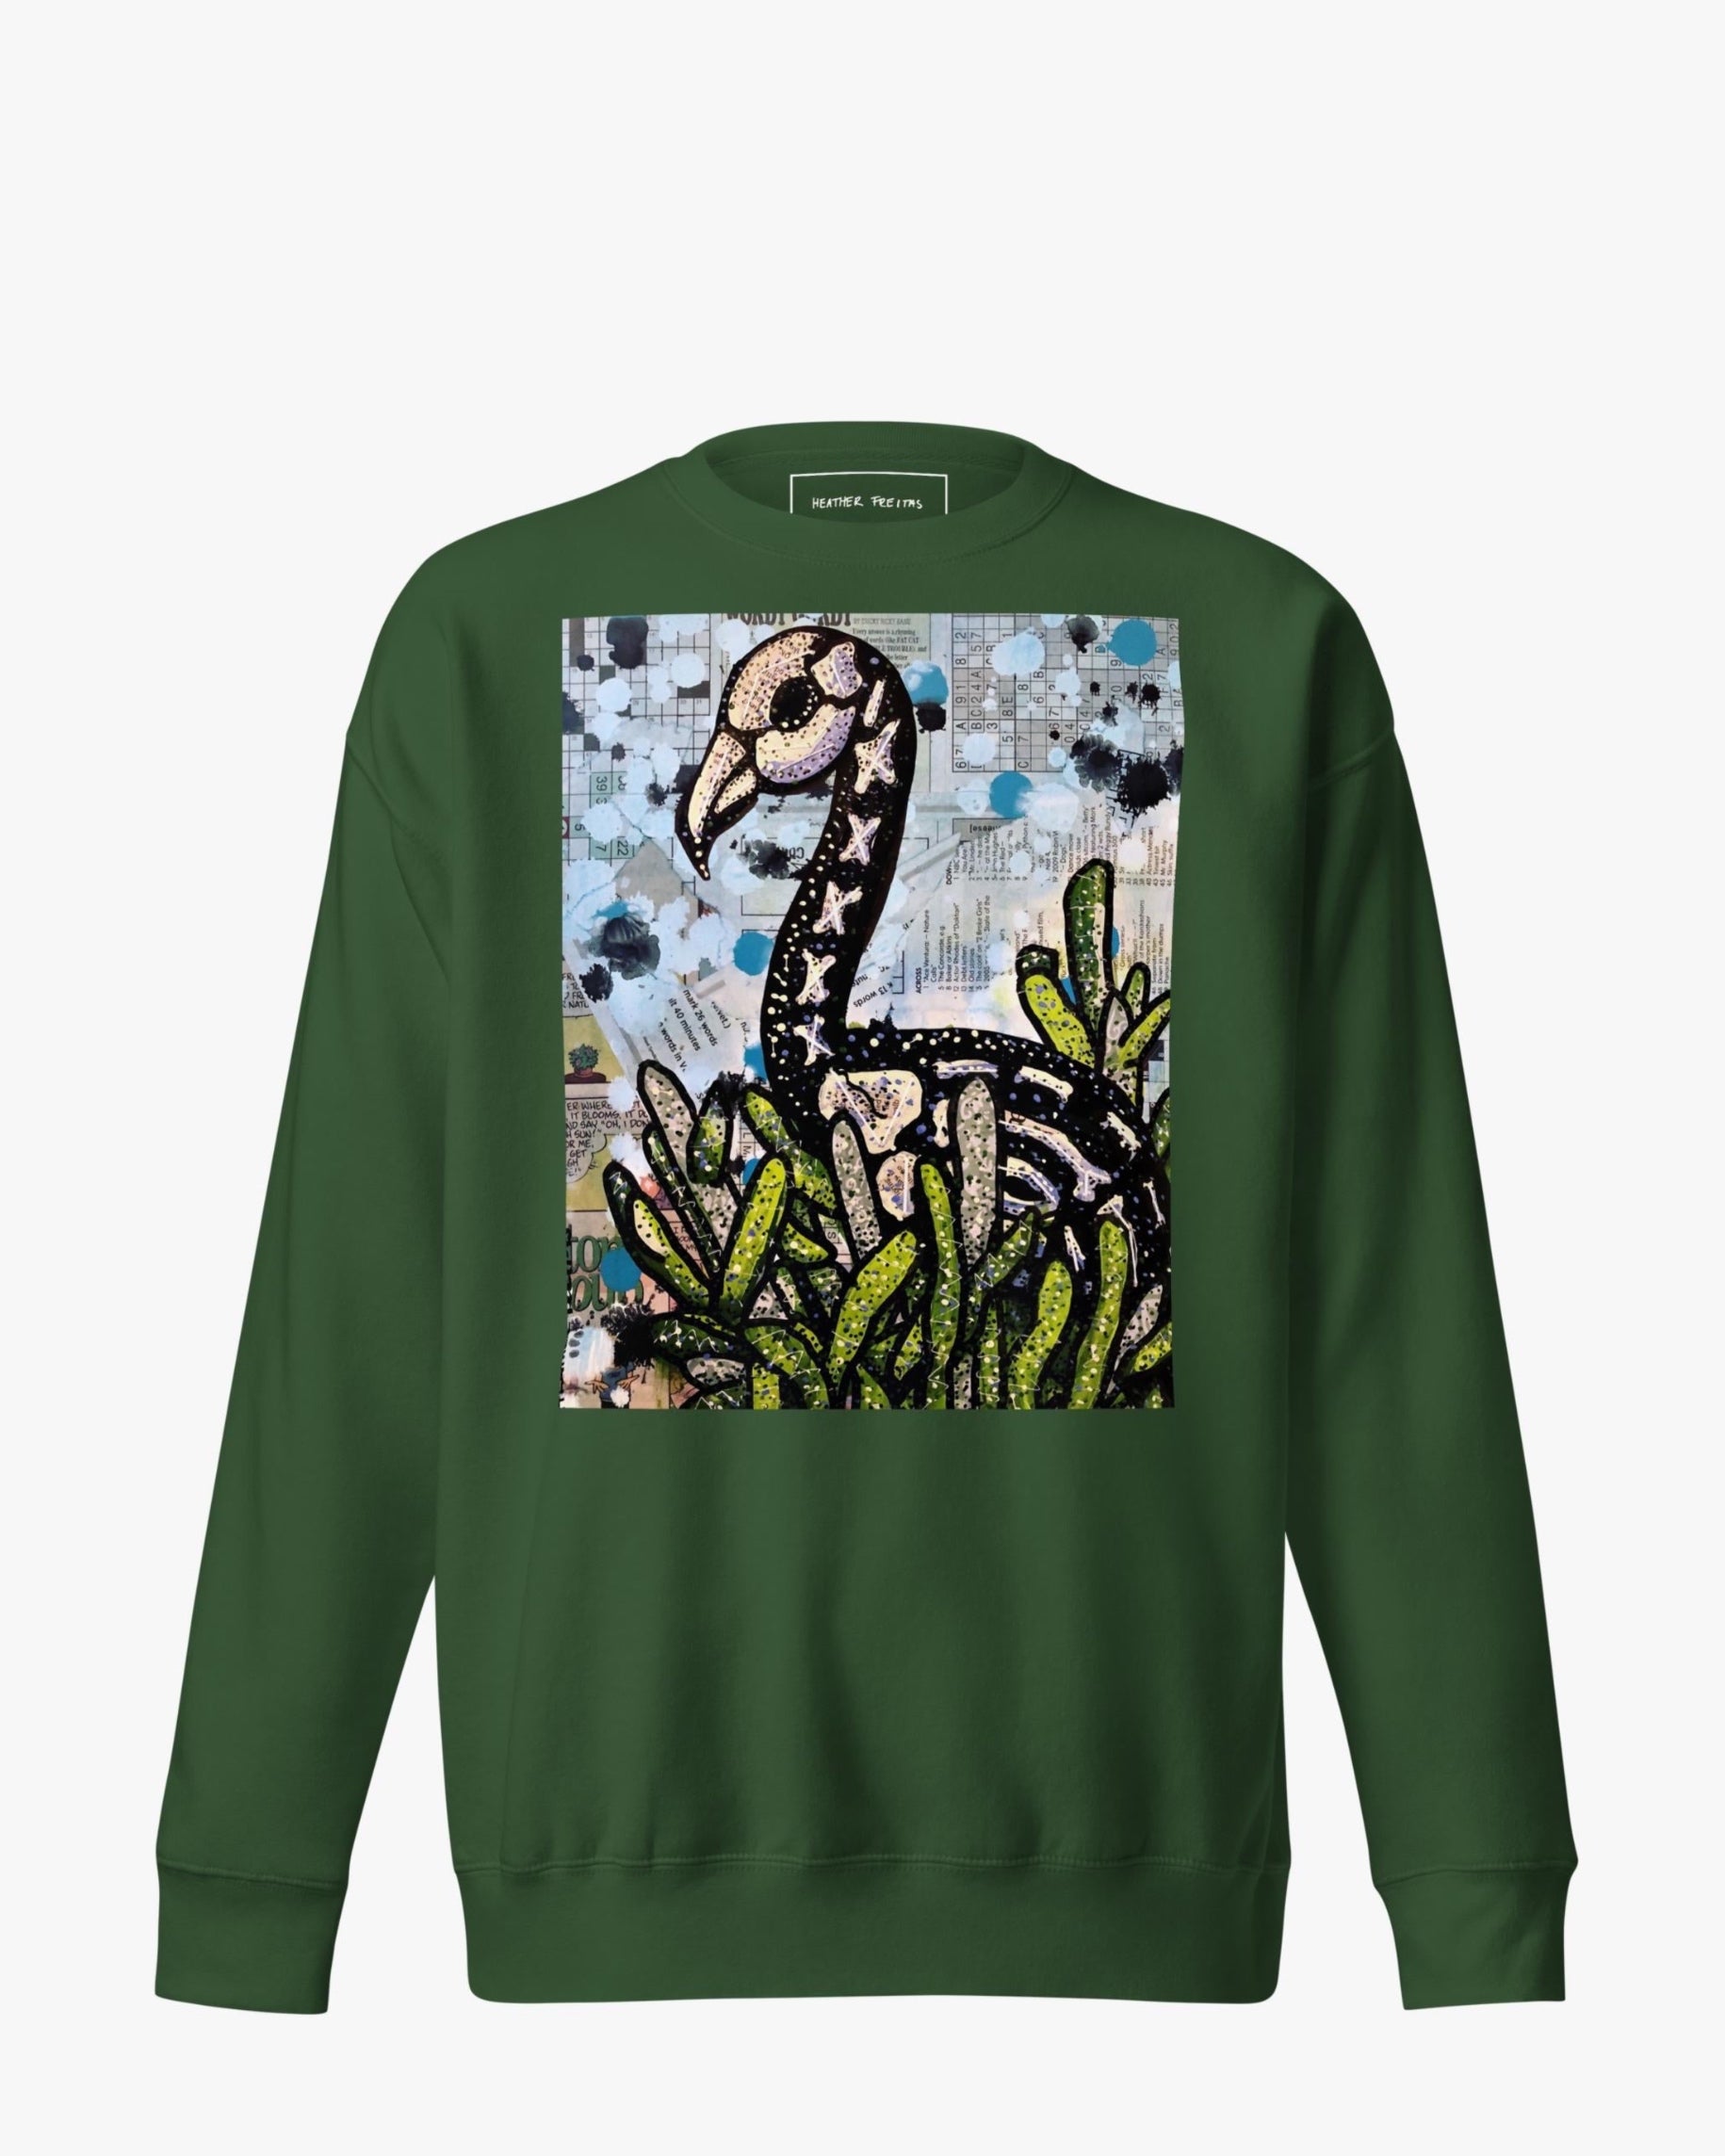 Punk Rock Flamingo Unisex Premium Sweatshirt